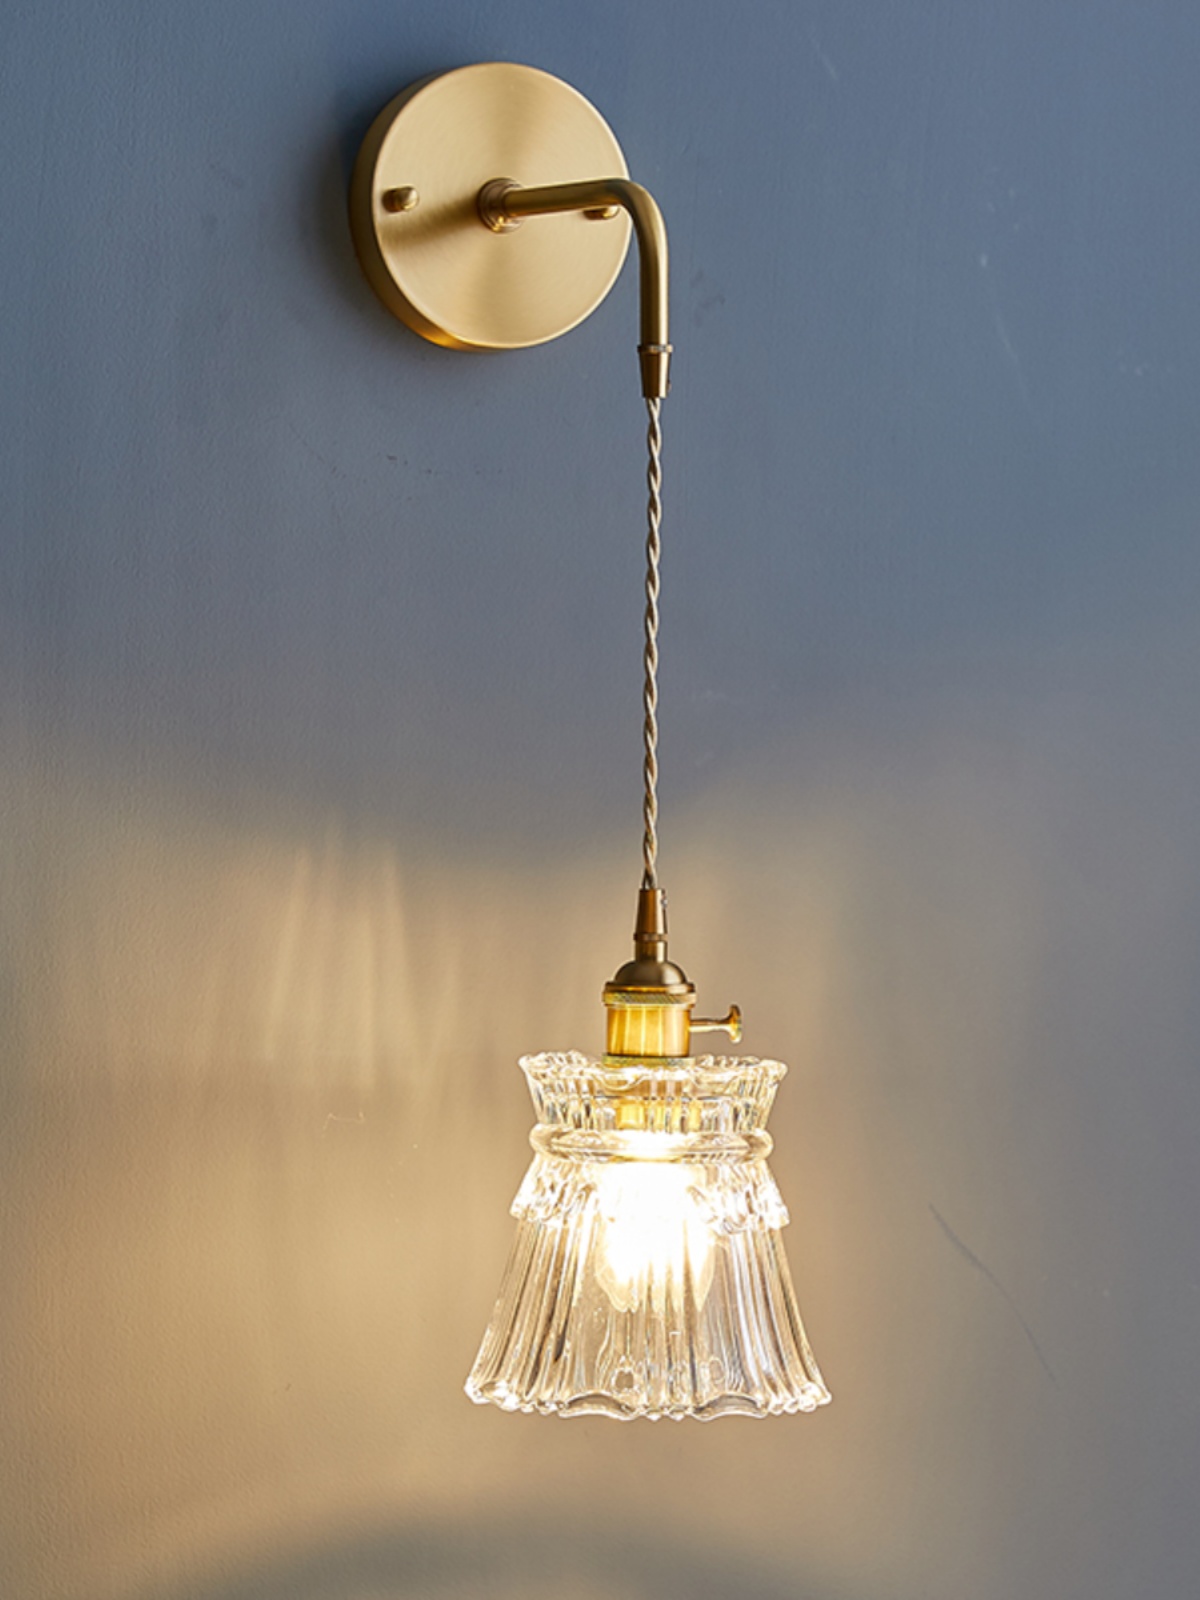 北歐簡約玻璃壁燈 現代風格銅製臥室吊燈 (7.4折)